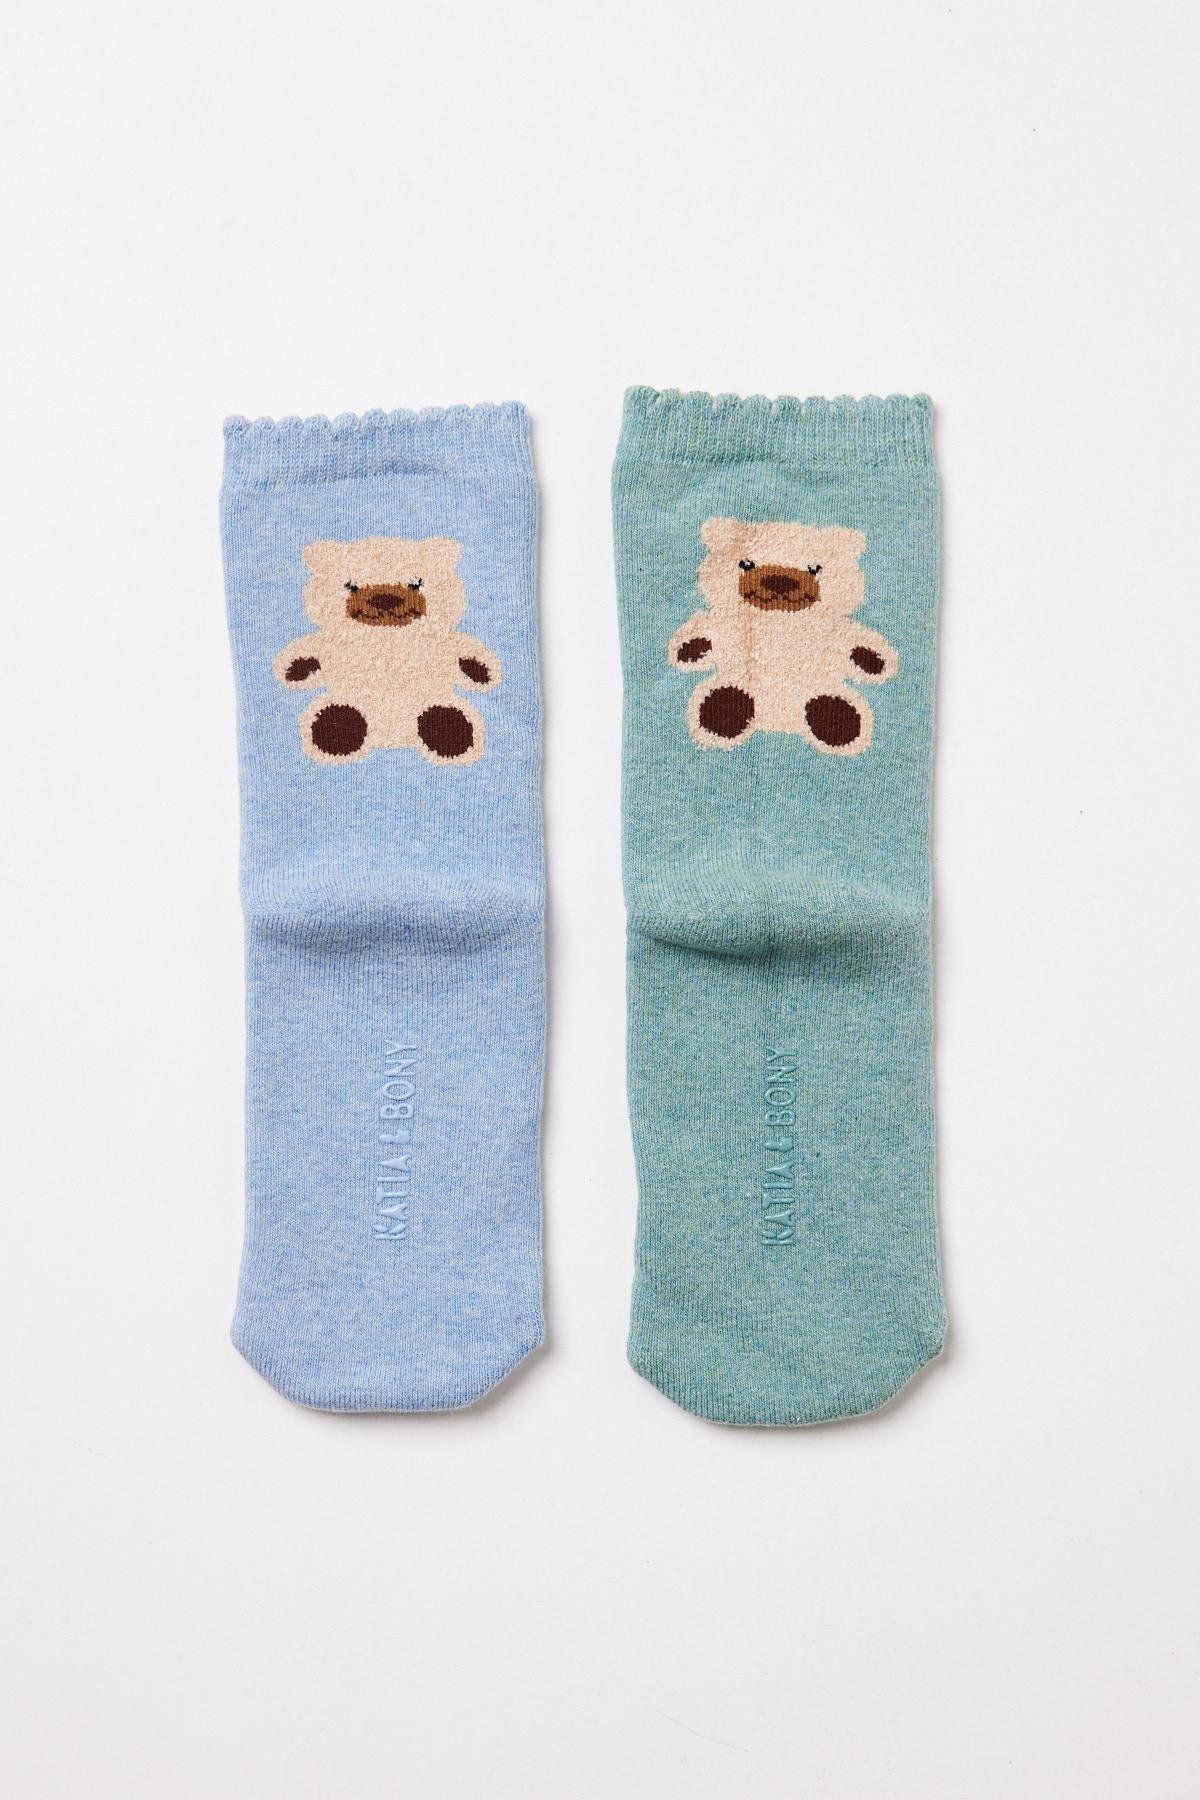 Katia & Bony KATİA&BONY teddy bebek havlu soket çorap